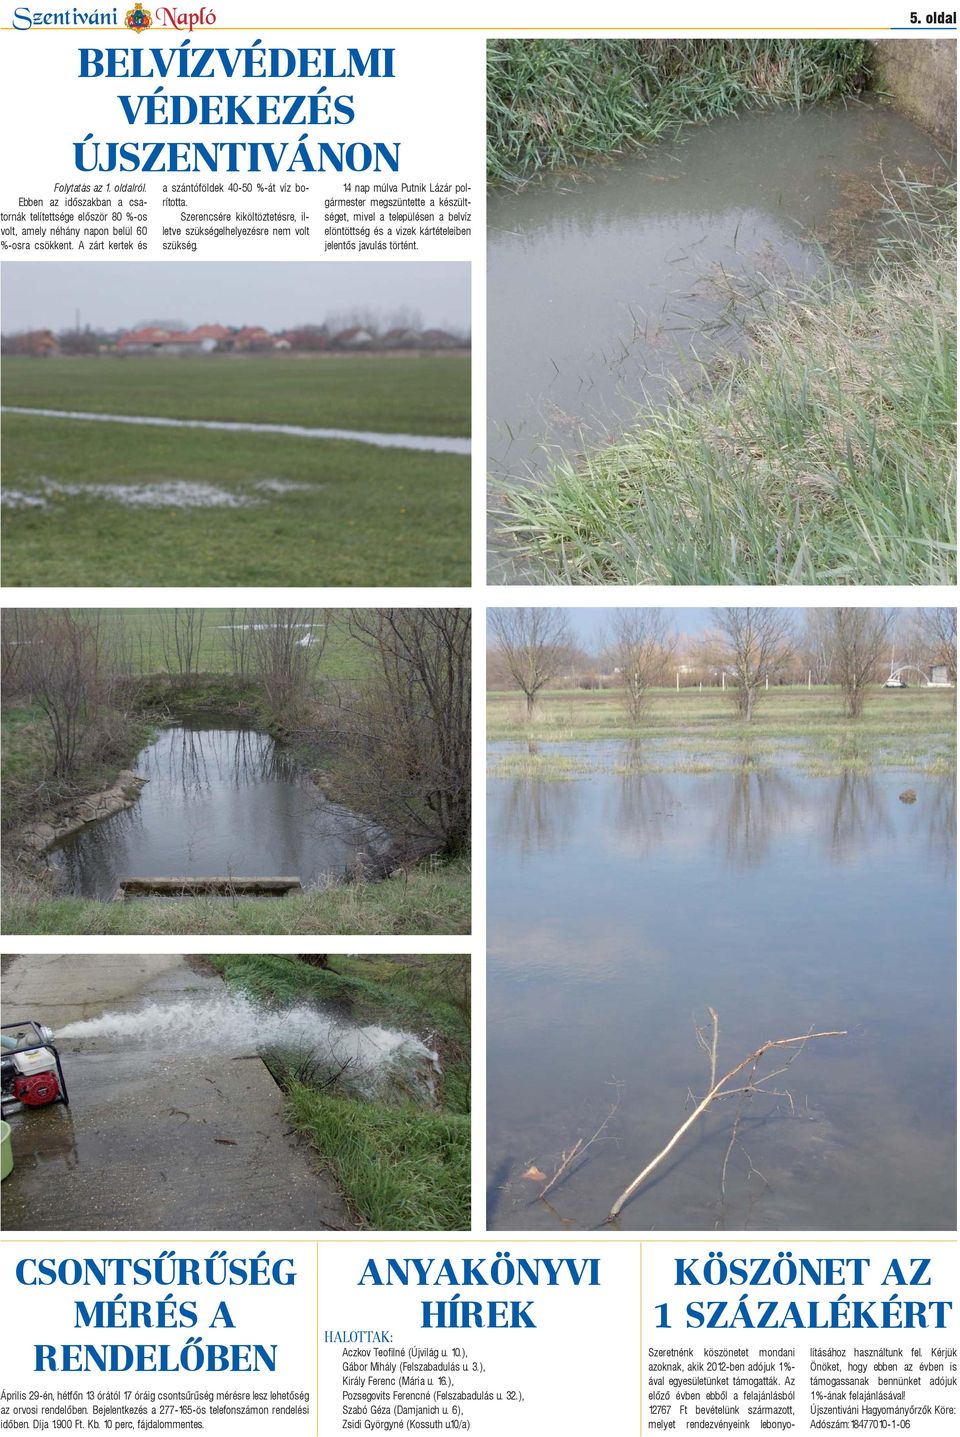 14 nap múlva Putnik Lázár polgármester megszüntette a készültséget, mivel a településen a belvíz elöntöttség és a vizek kártételeiben jelentős javulás történt. 5.